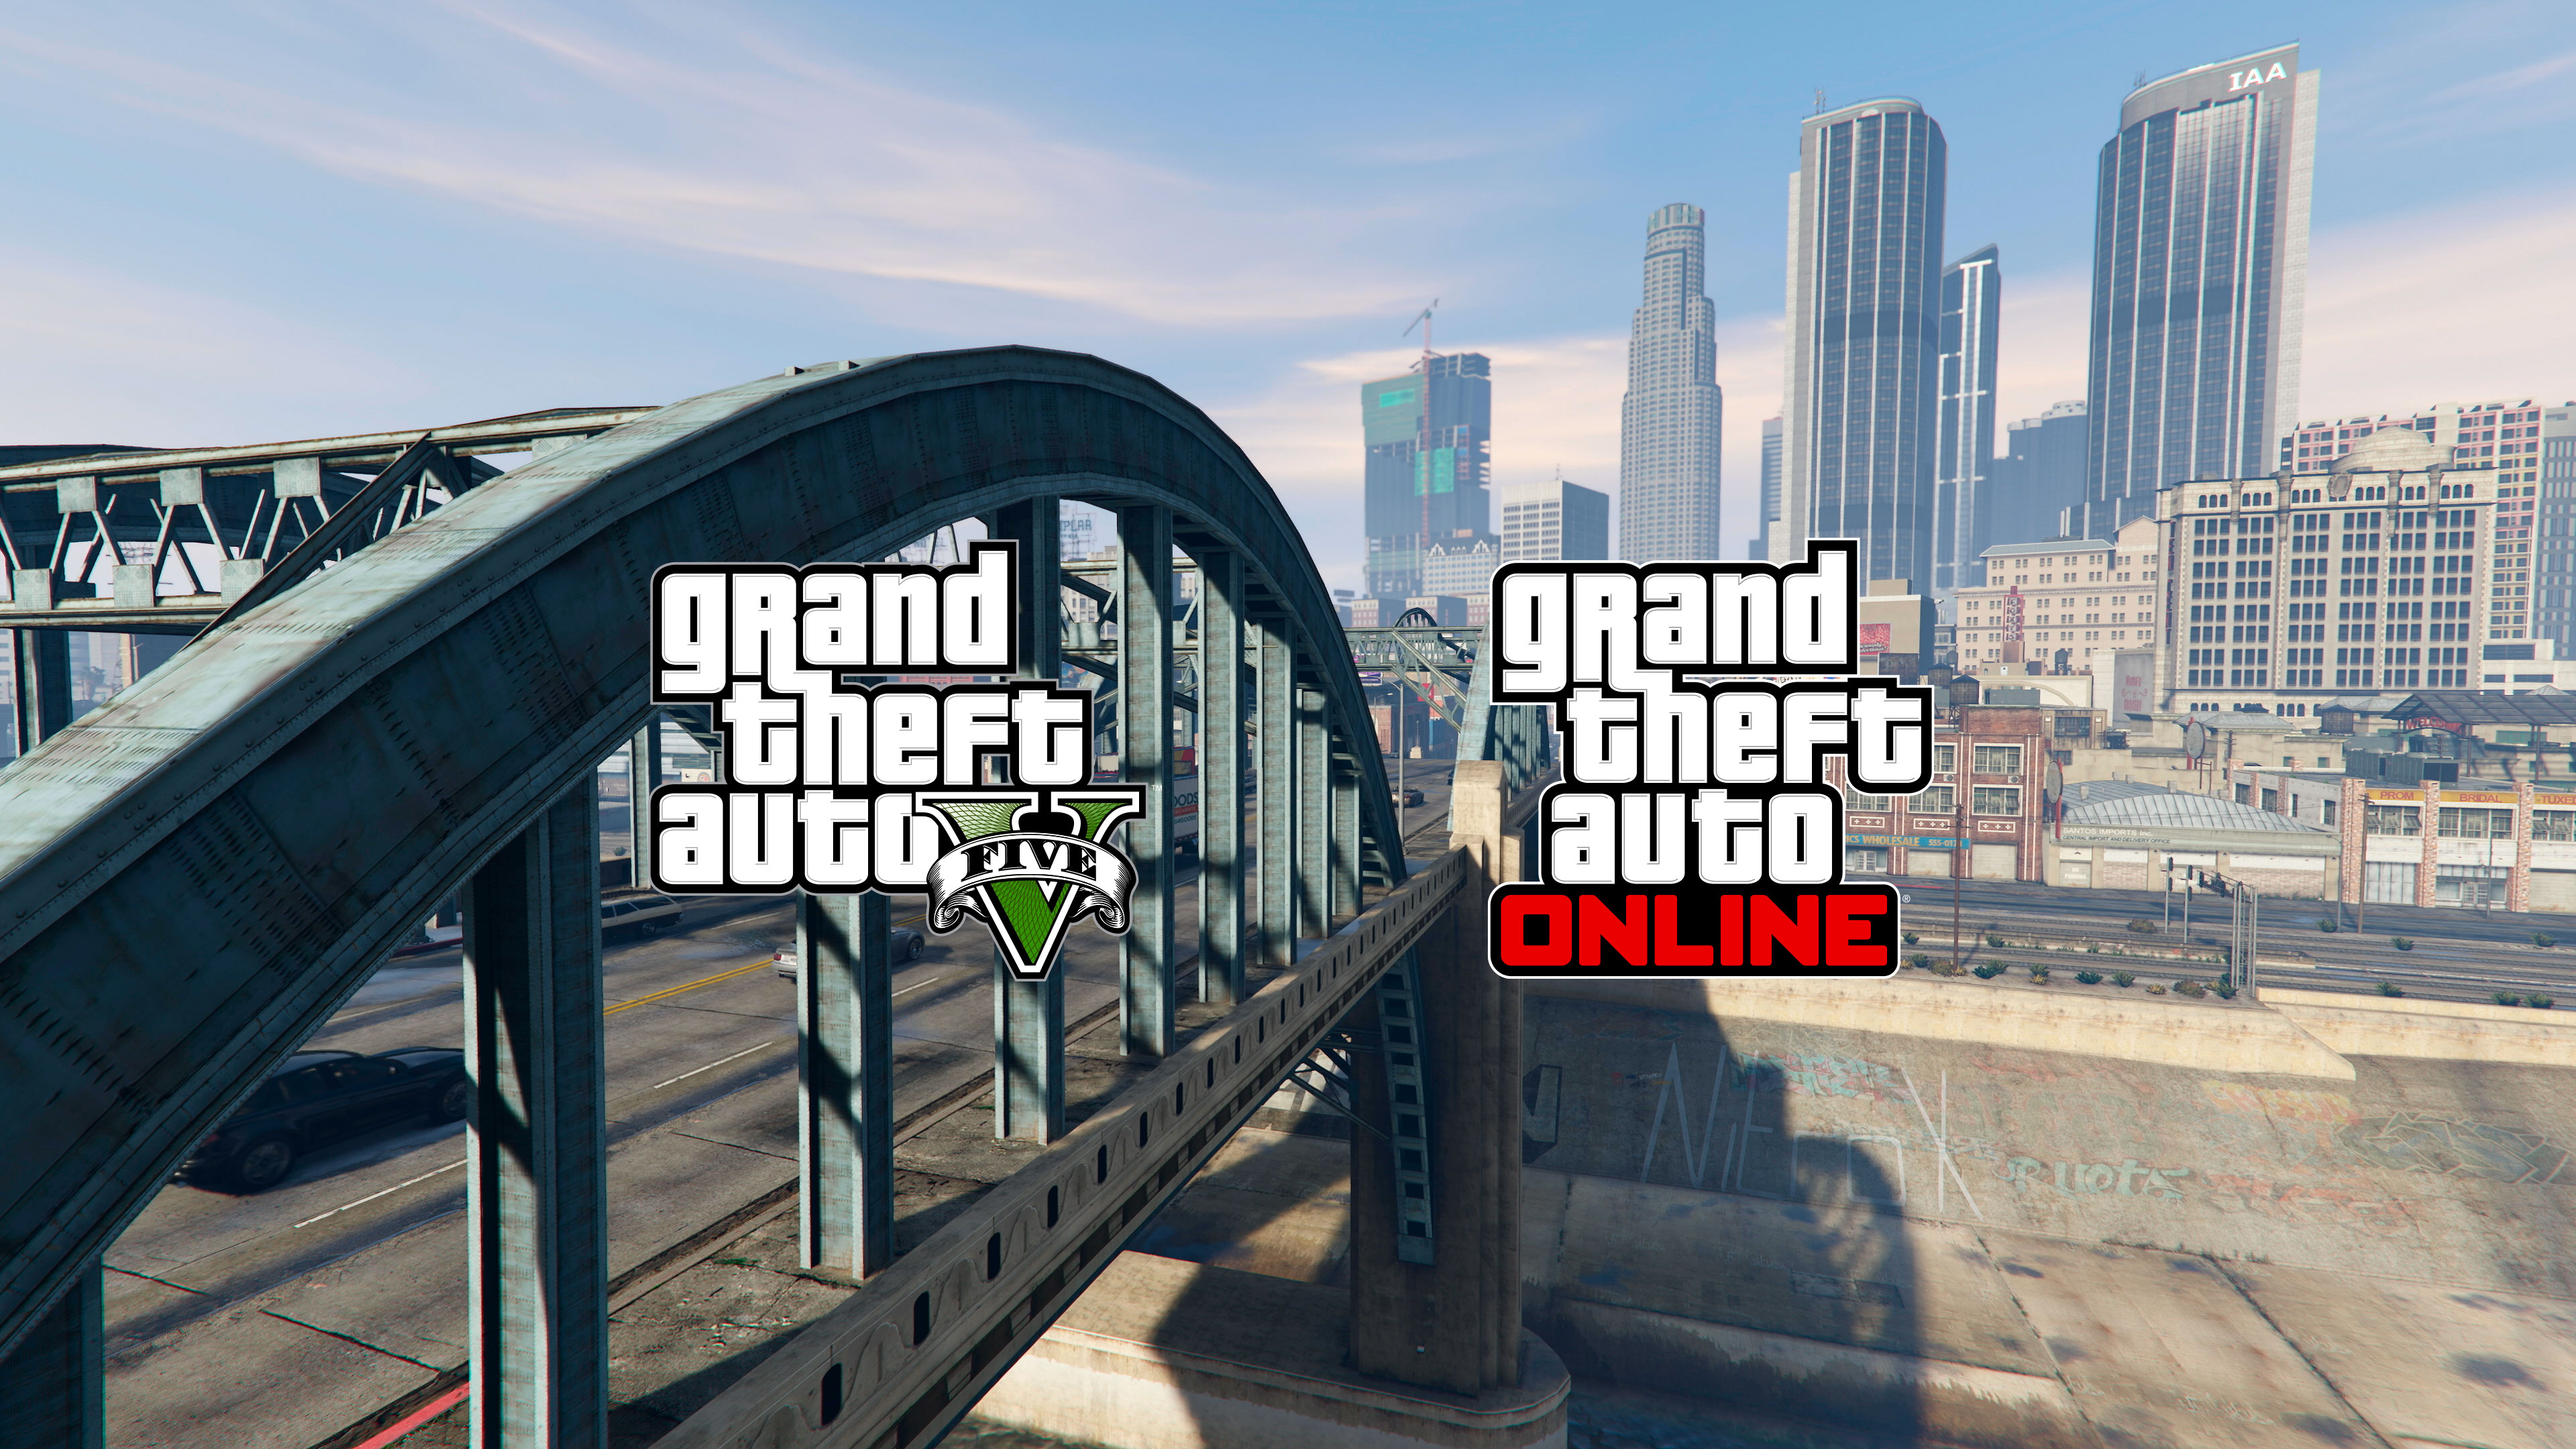 Grand Theft Auto V e GTA Online já disponíveis para PlayStation 5